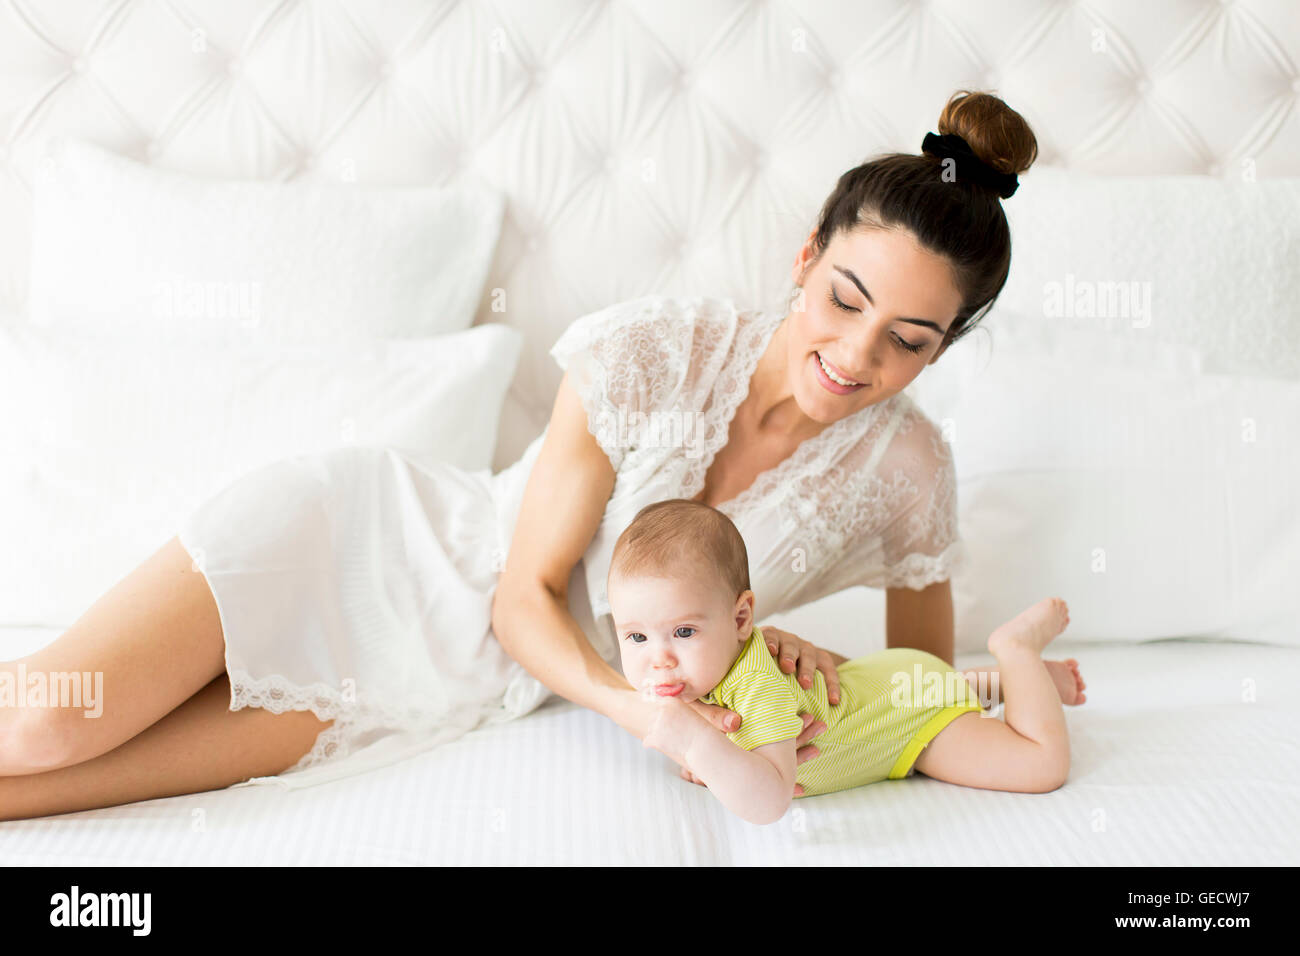 Jeune maman avec un bébé sur le lit Banque D'Images